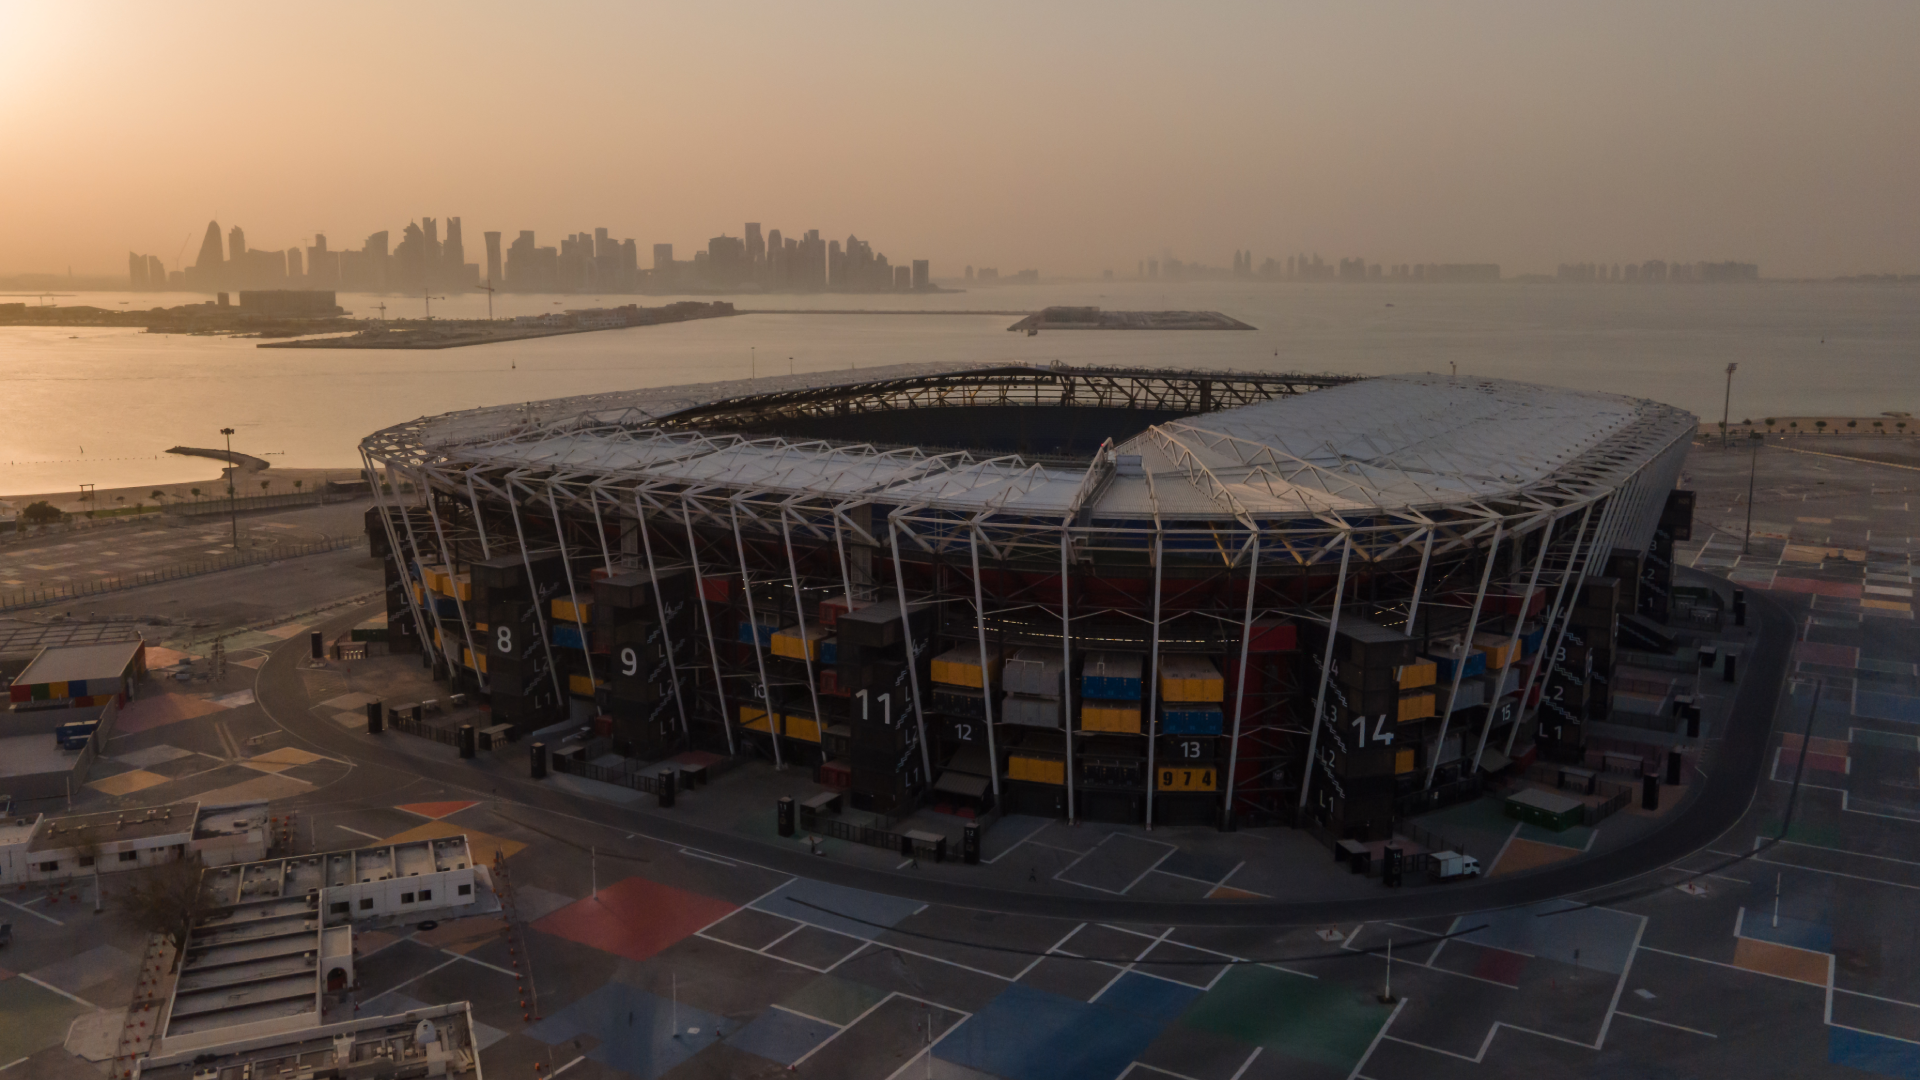 Stade 974 vue aérienne Coupe du monde 2022 Qatar